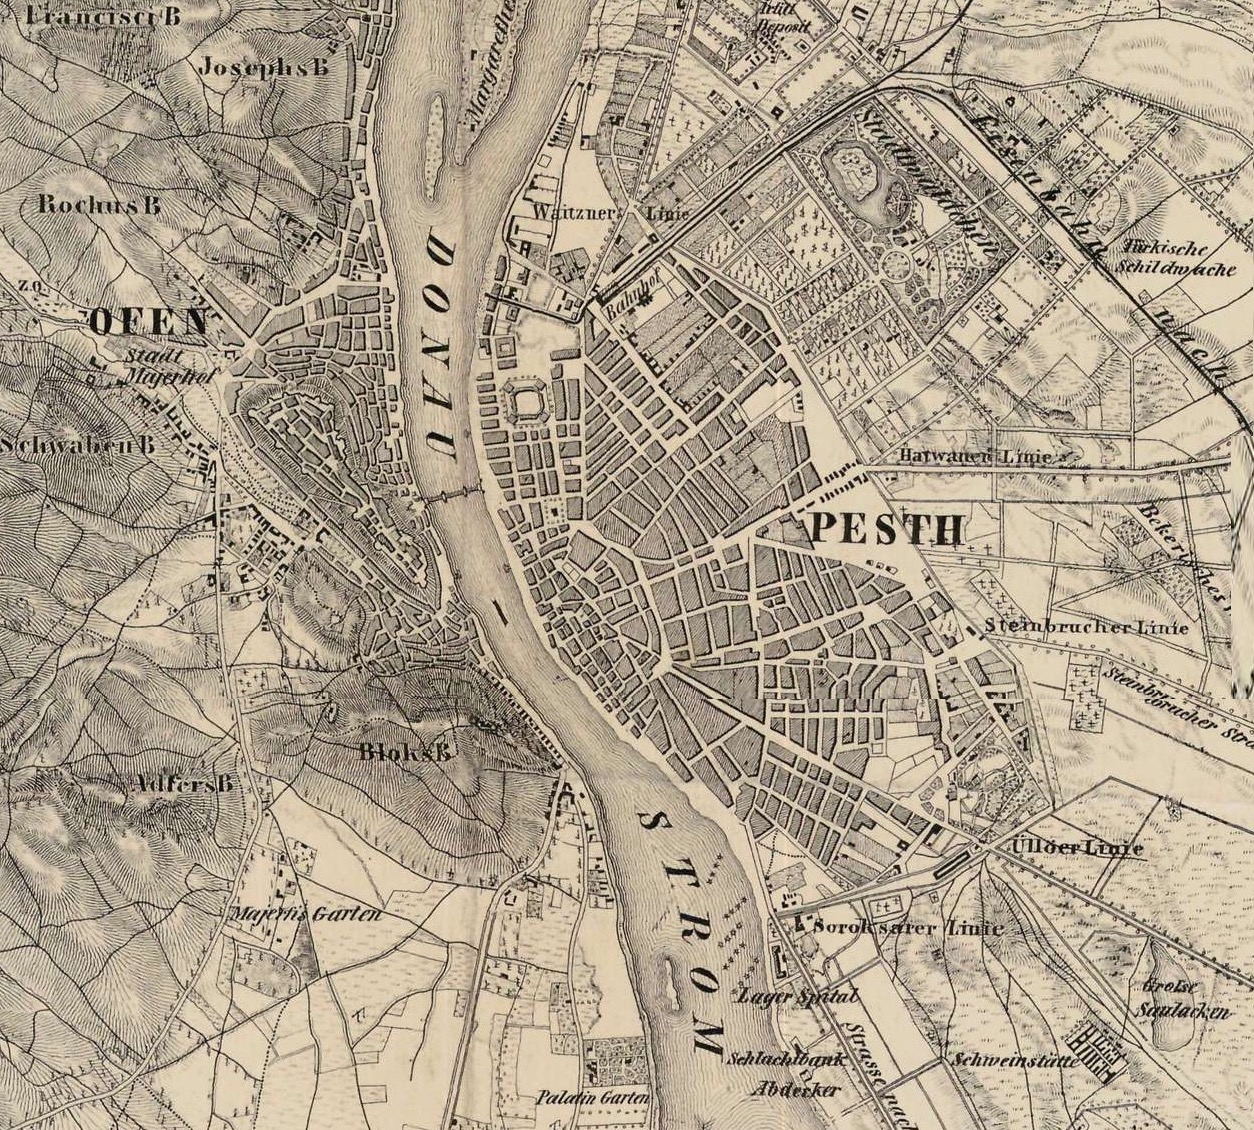 Pest, Buda és Óbuda térképe, 1852 (részlet)